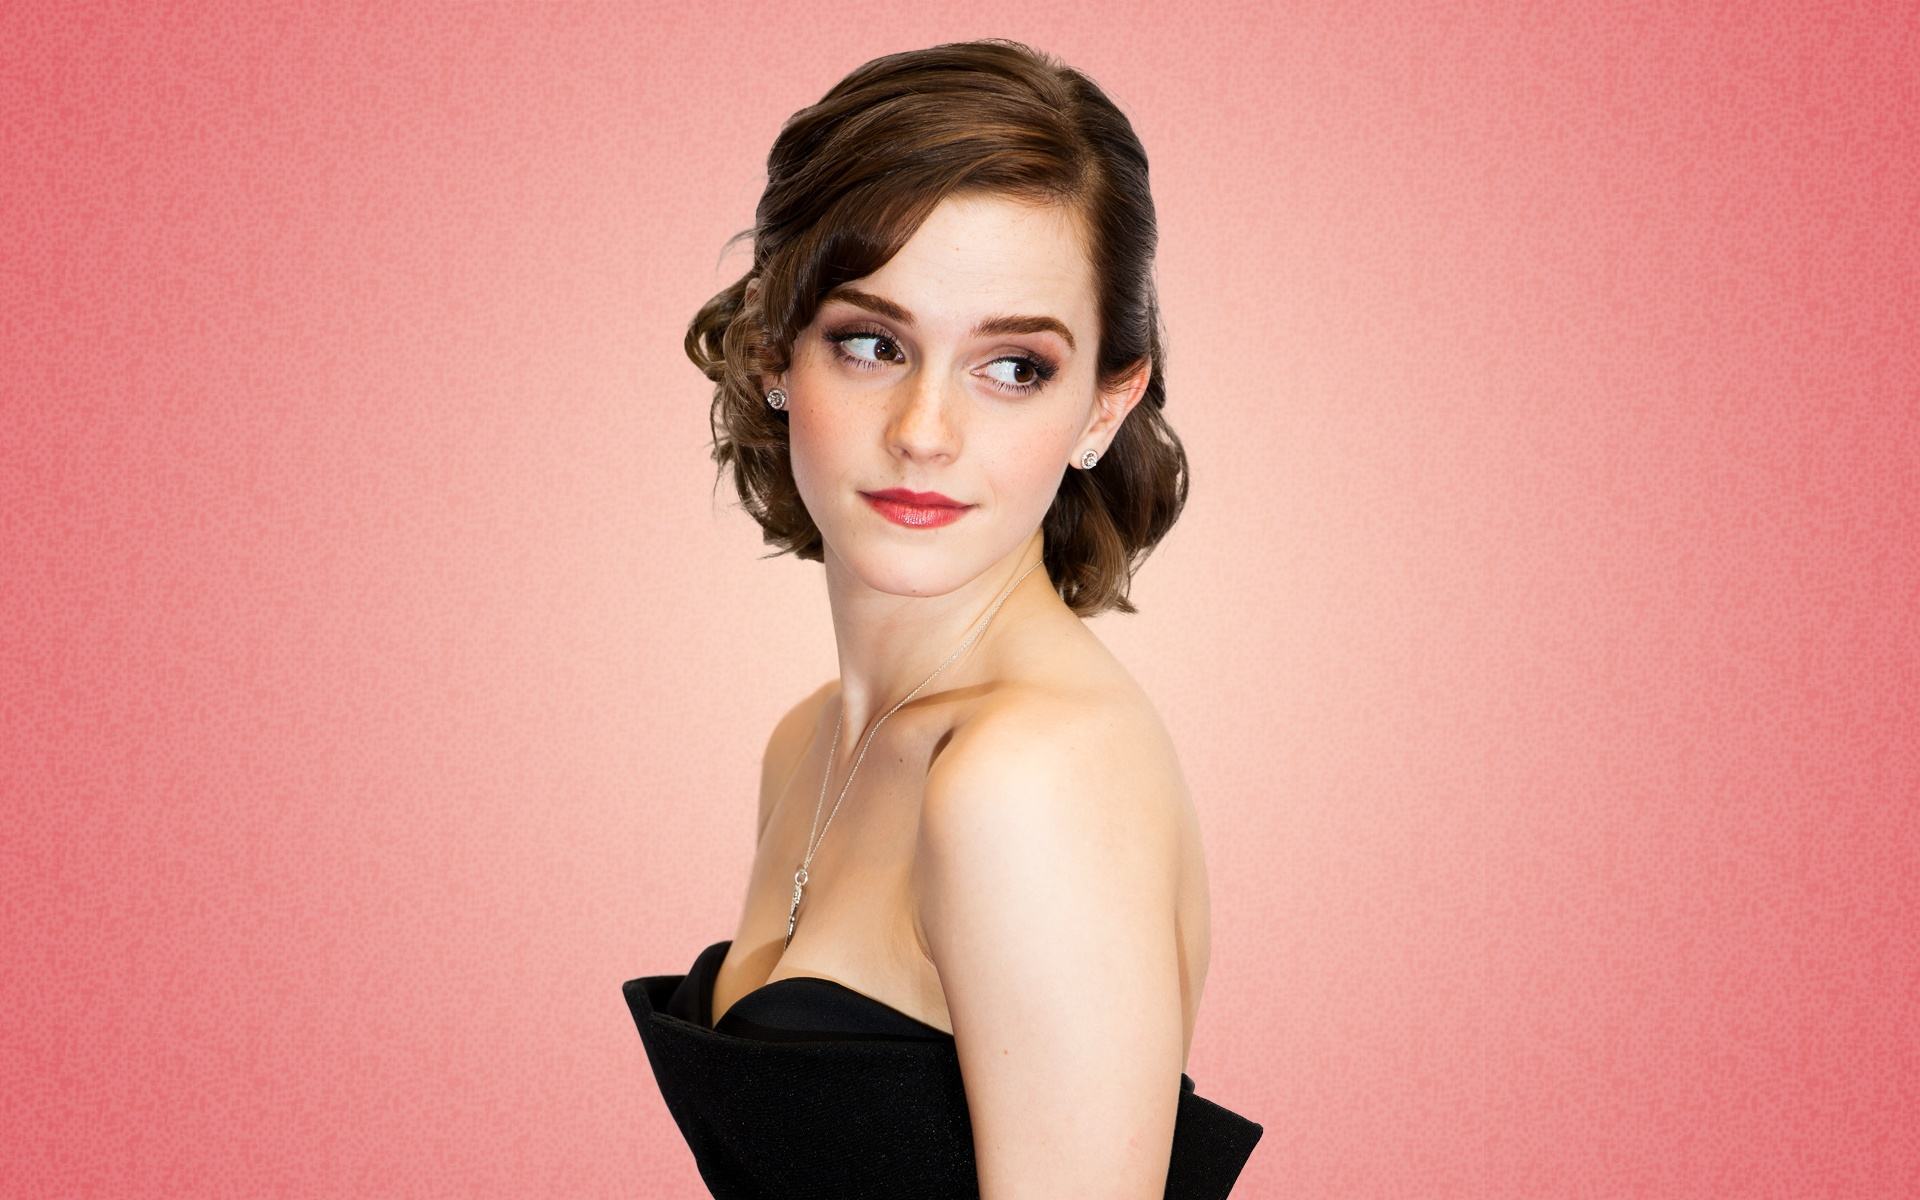 Emma Watson deixa o cinema por um ano para se dedicar ao feminismo